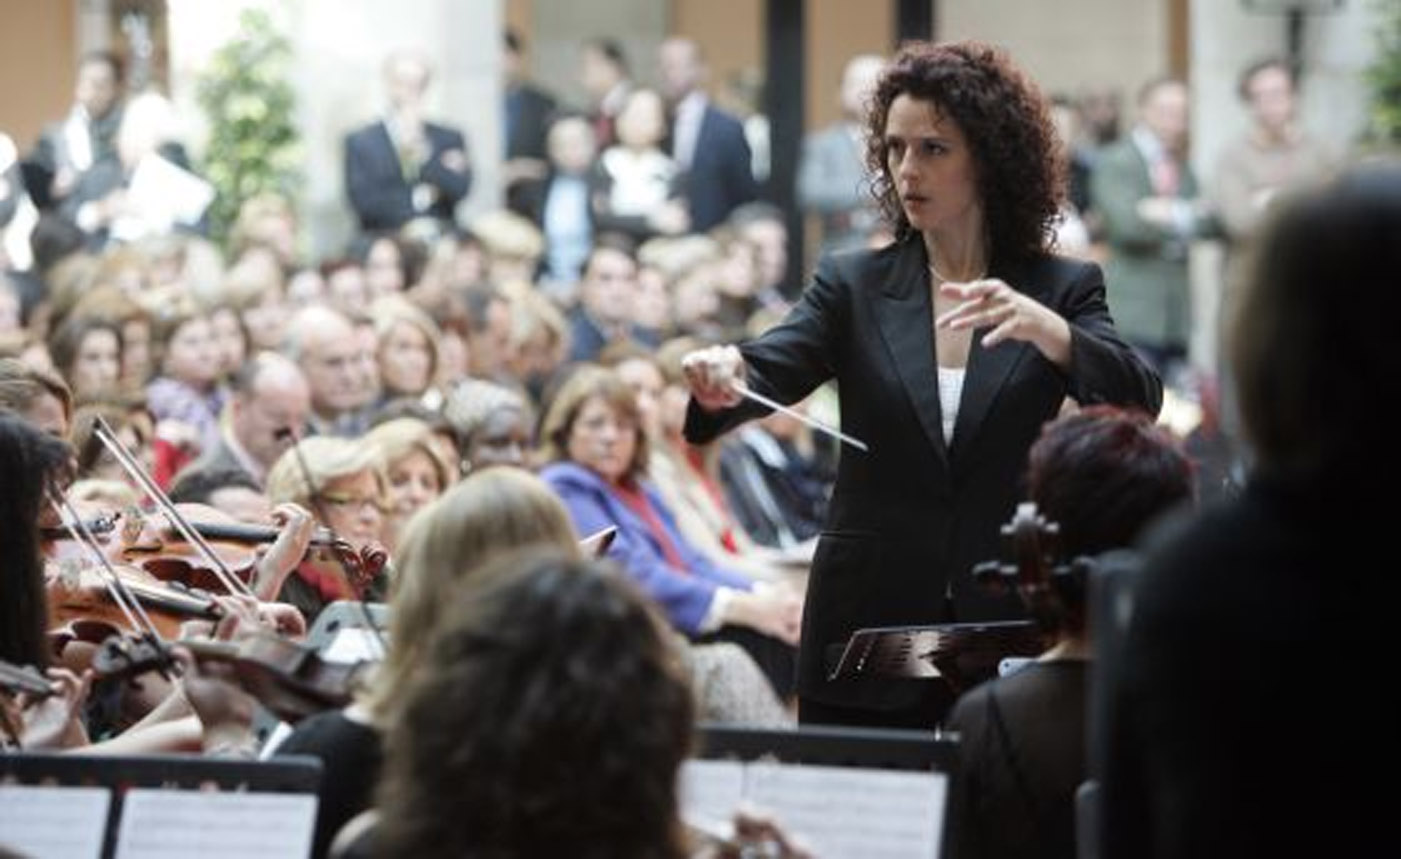 Mujeres en la música clásica: discriminación, sexismo y falta de conciliación